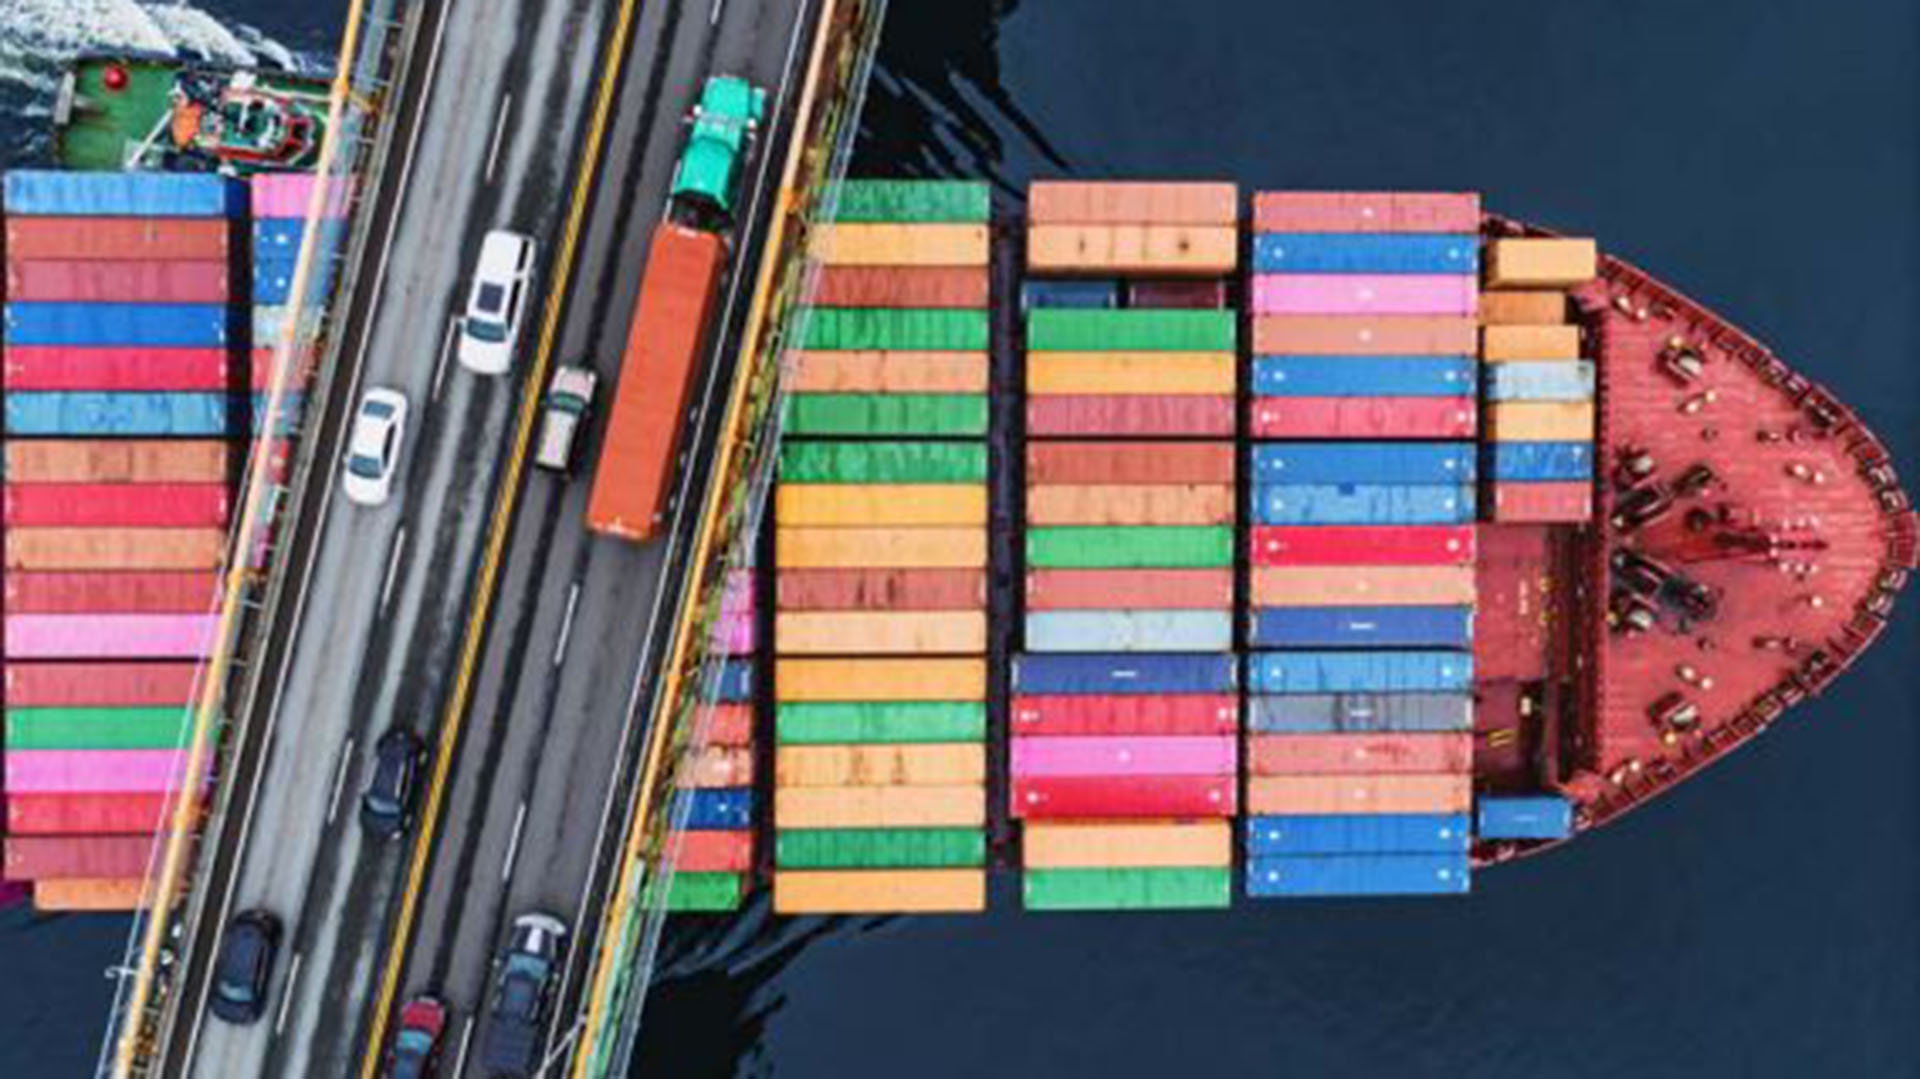 La vista aérea de un buque portacontenedor atravesando un puente sugiere el peso decisivo del tráfico marítimo en el comercio mundial